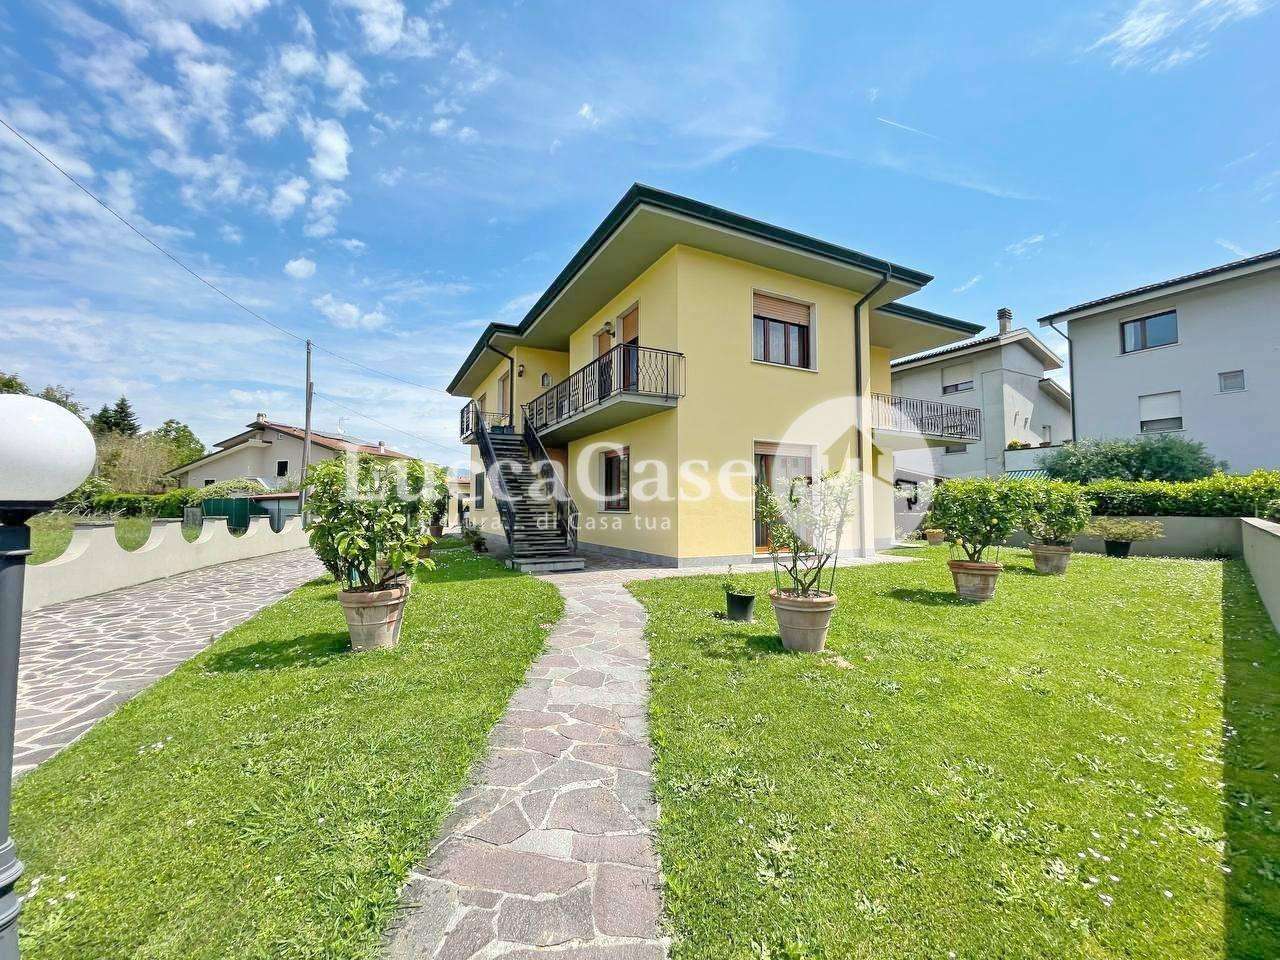 Casa Bi - Trifamiliare in Vendita a Lucca Via Sant 'Angelo,